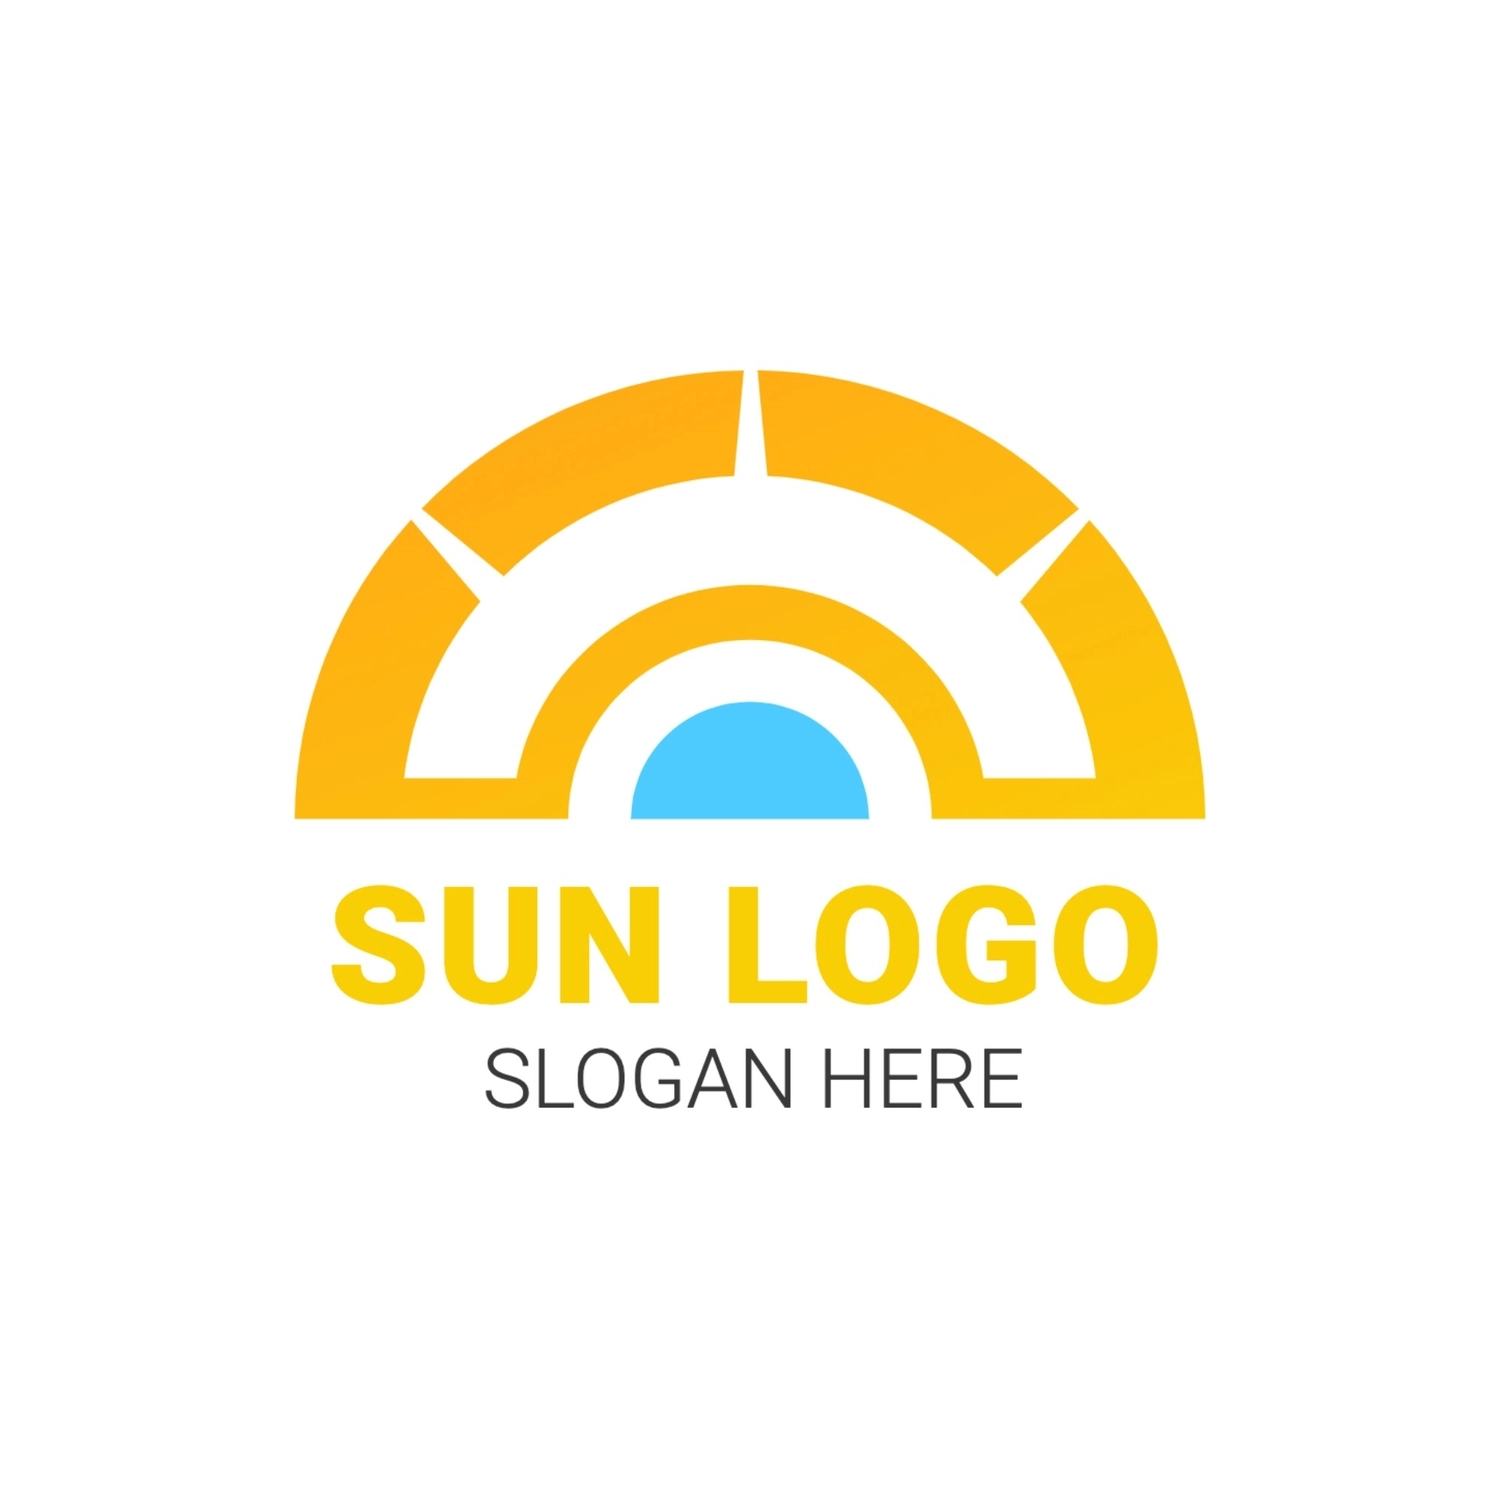 太陽のロゴ, ロゴ, ロゴマーク, ロゴタイプ, ロゴテンプレート